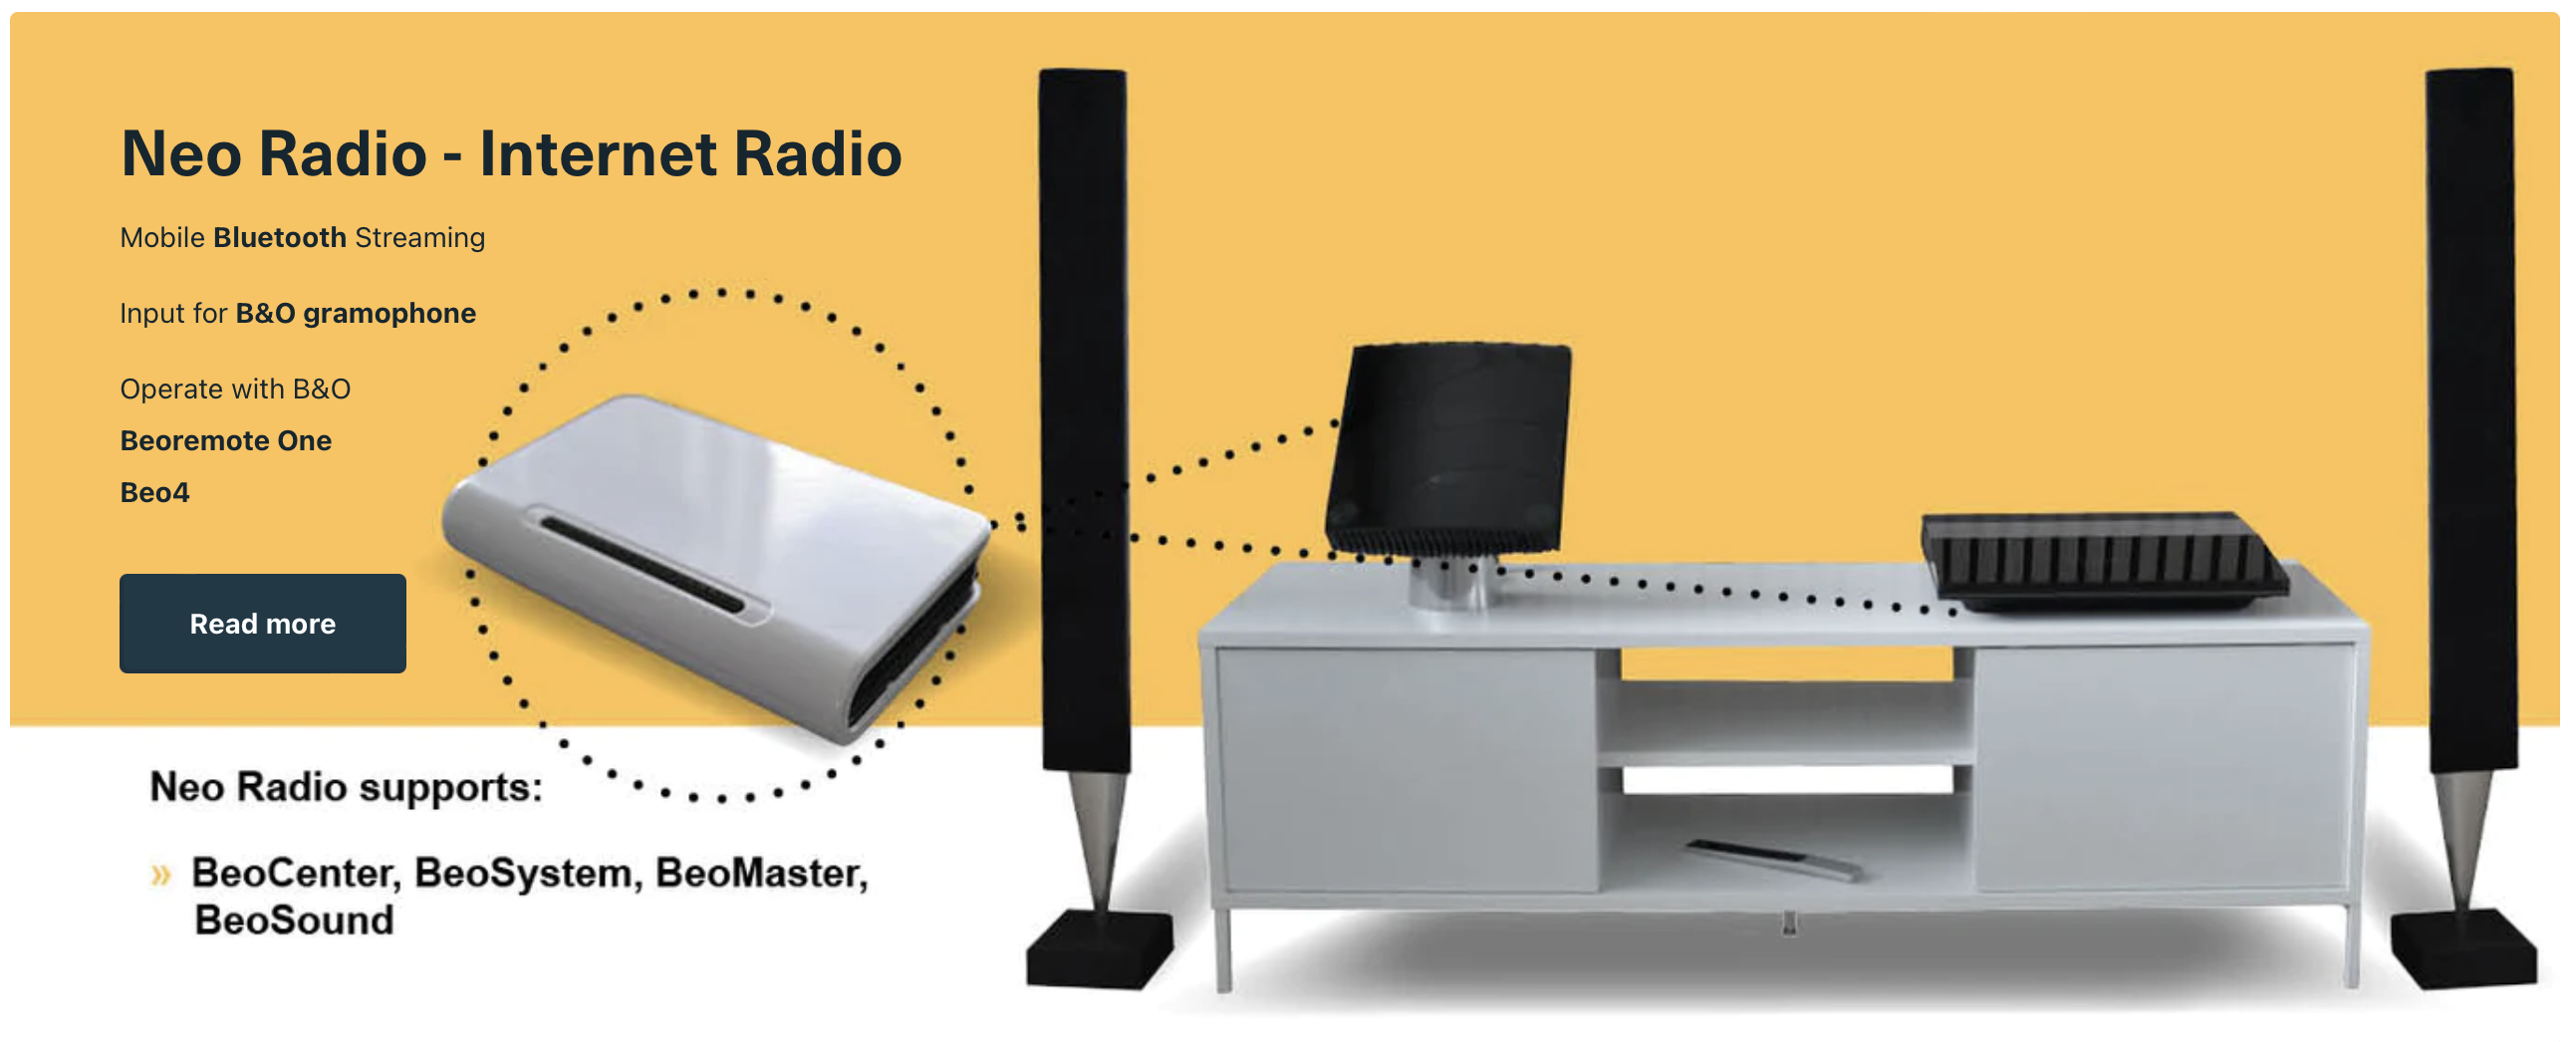 Neo Radio - Streamt Ton an Ihre B&O-Produkte mit Neo-Technologie für Ihr B&O-Produkt